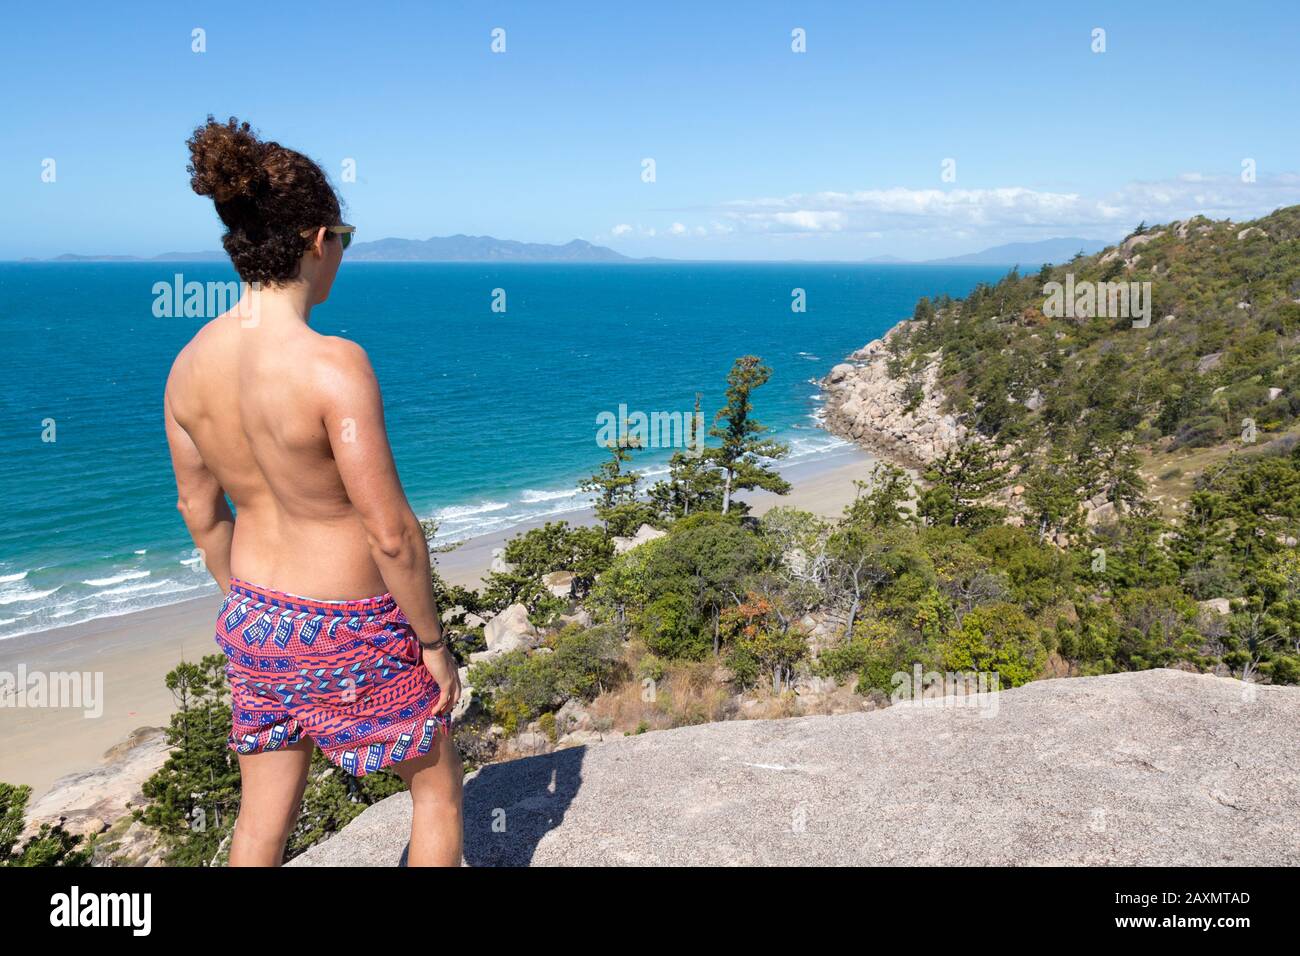 Giovane uomo con un boccale e costume da bagno, con vista sull'oceano Foto Stock